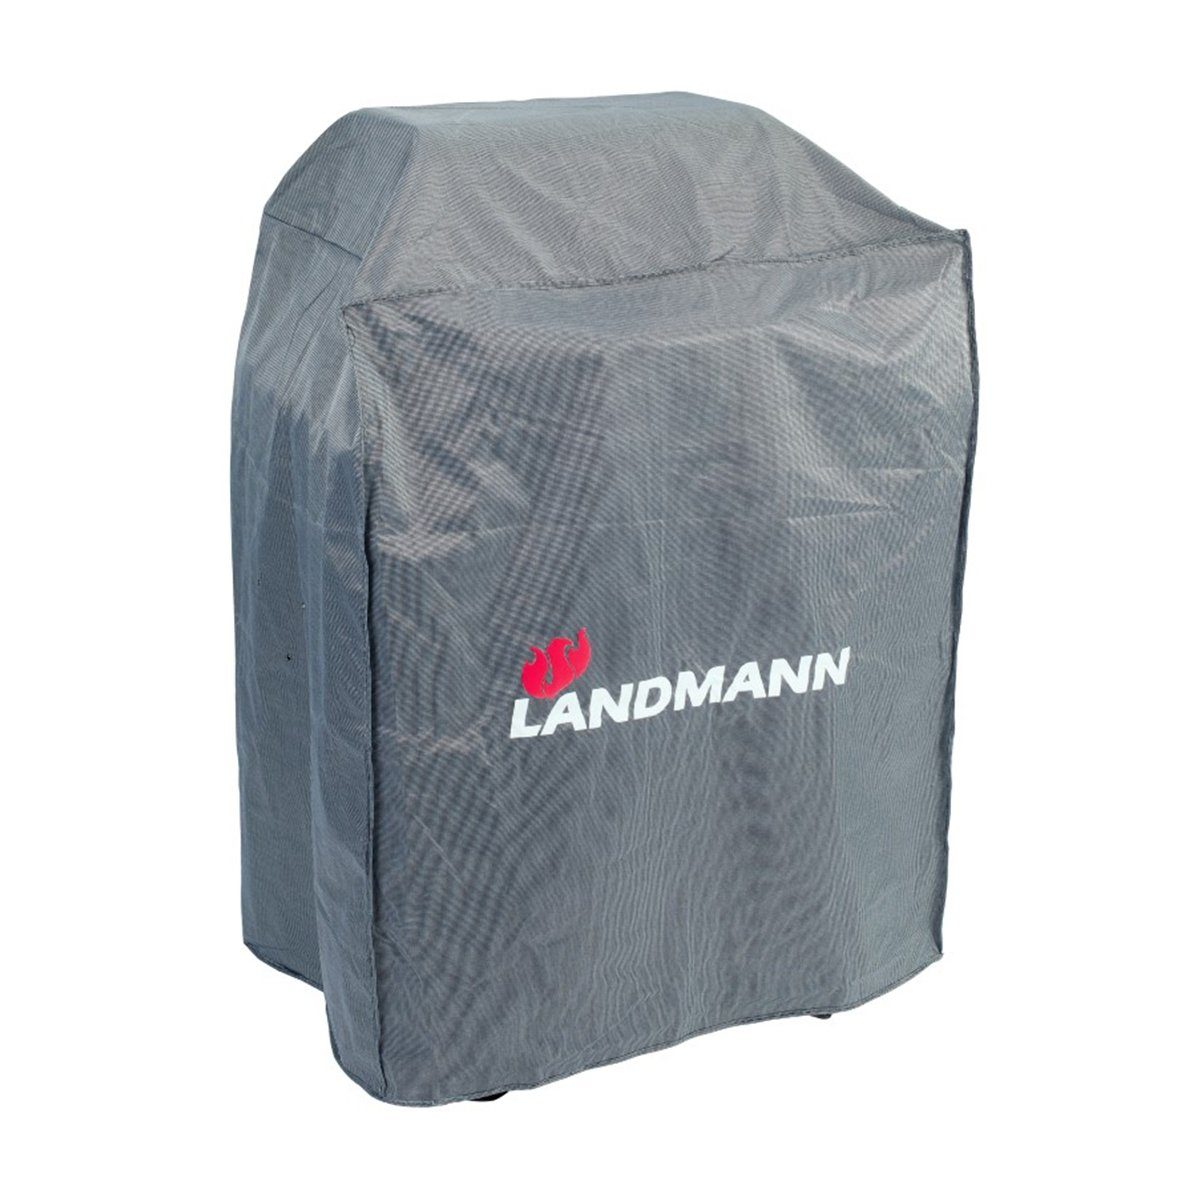 LANDMANN Grillabdeckhaube Wetterschutzhülle Premium 55x117x90cm grau, Wasserdicht UV-beständig atmungsaktiv & kältebeständig